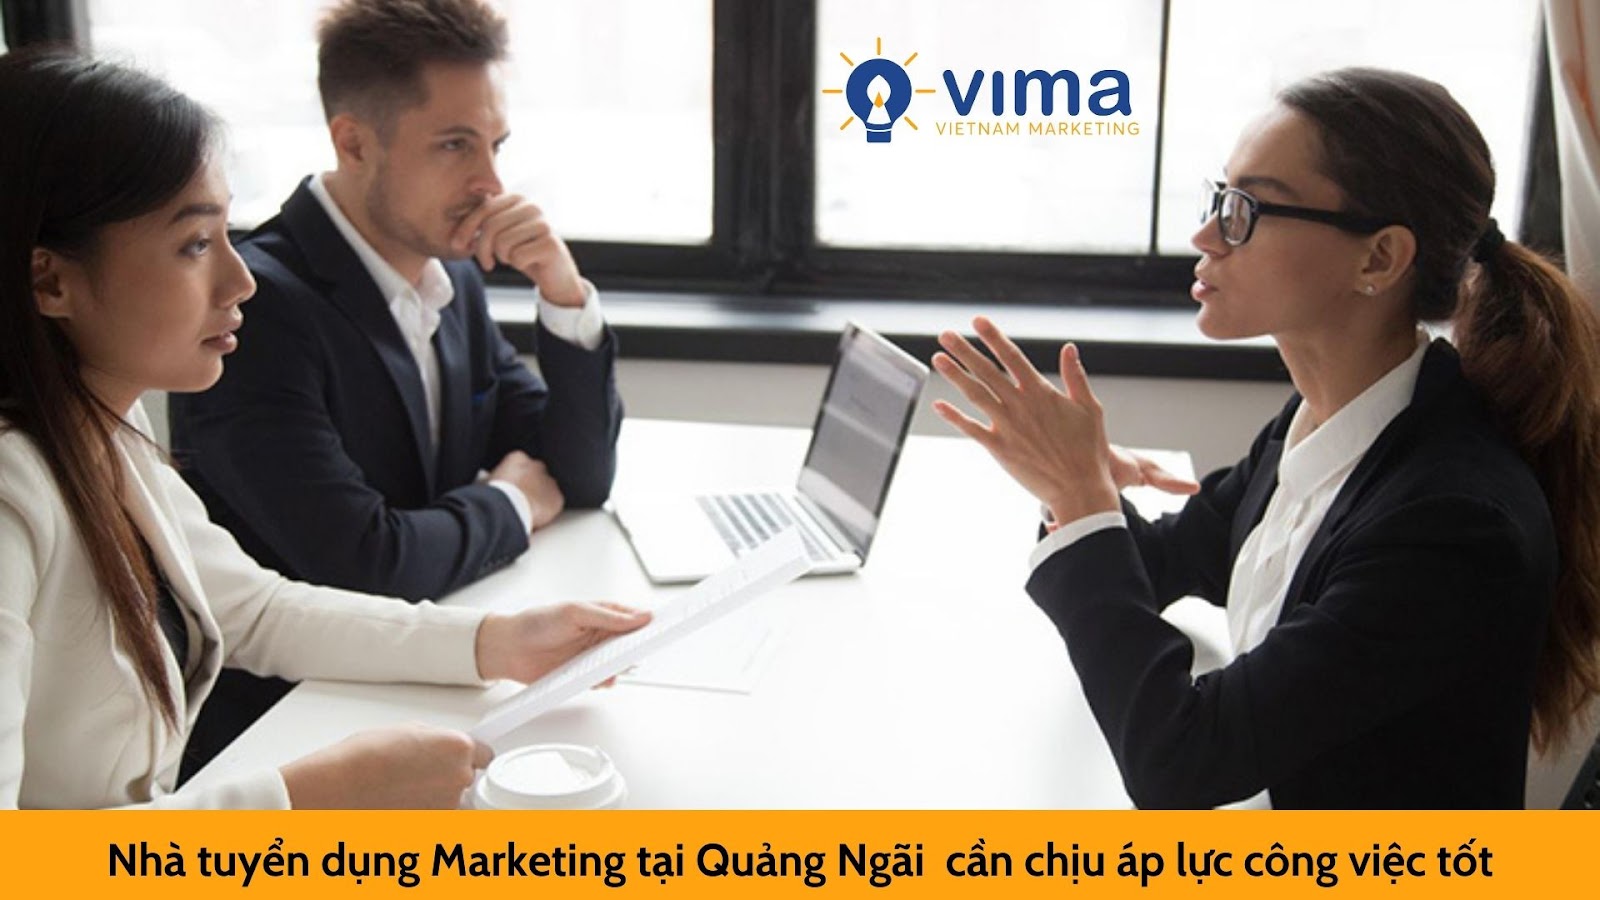 5 phẩm chất làm nên nhà tuyển dụng Marketing tại Quảng Ngãi chuyên nghiệp